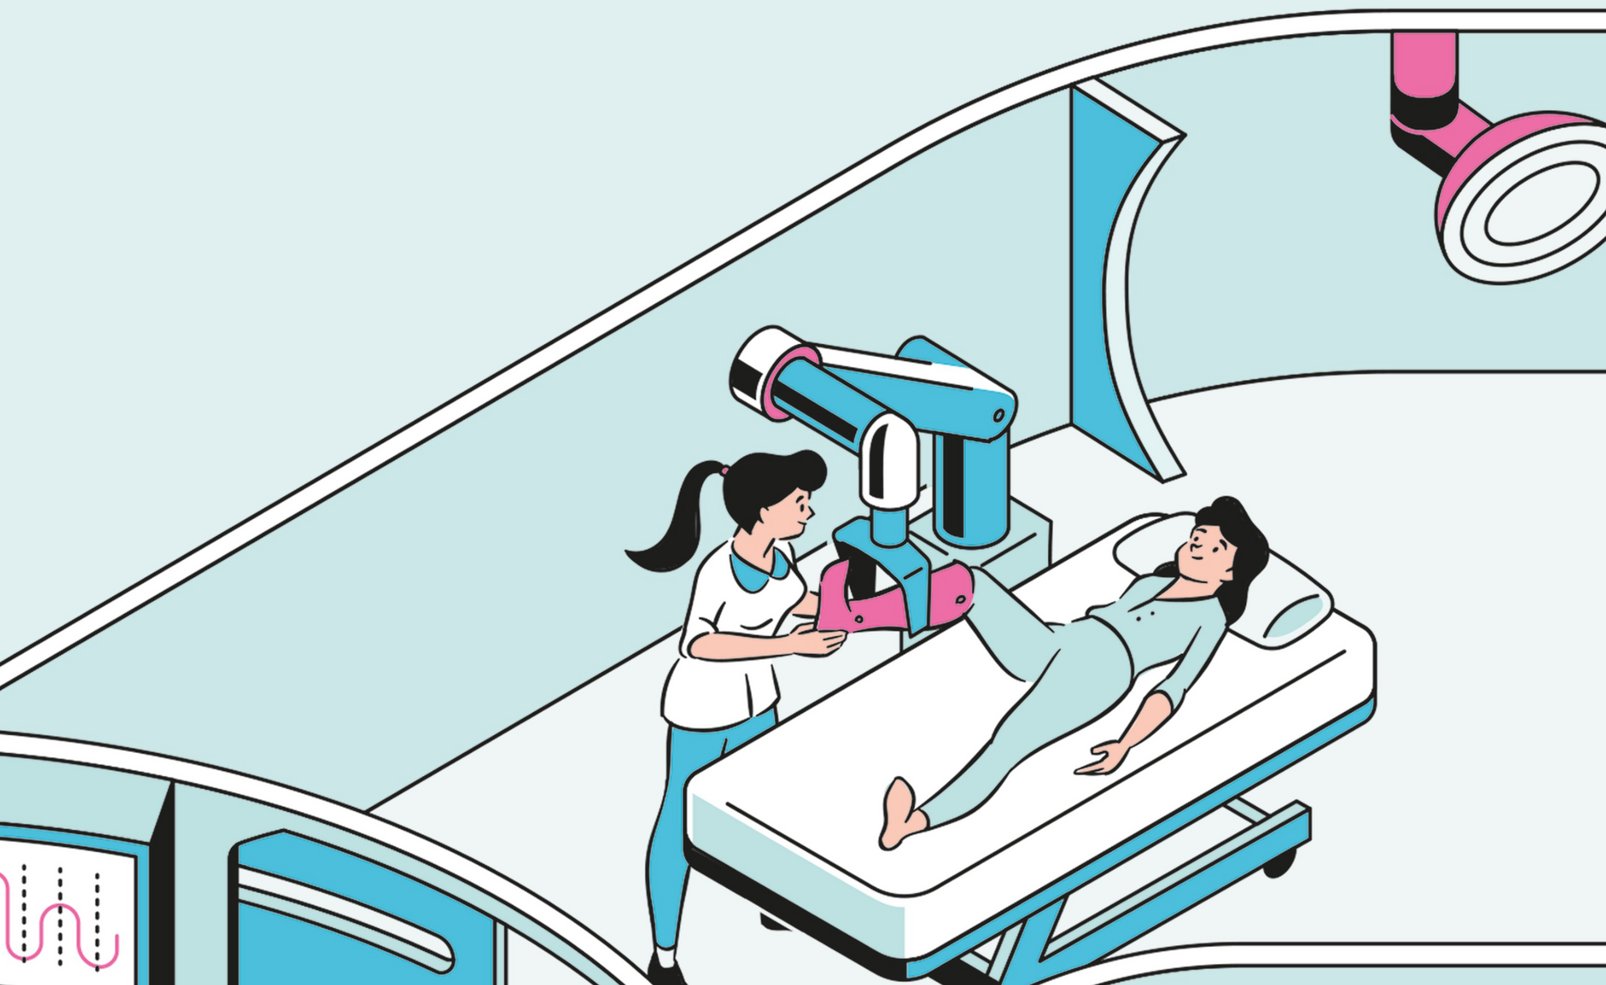 Illustration einer Frau auf einer Behandlungsliege, die ihr Bein in einen Roboterarm legt. Daneben steht eine weitere Frau die ihr hilft.